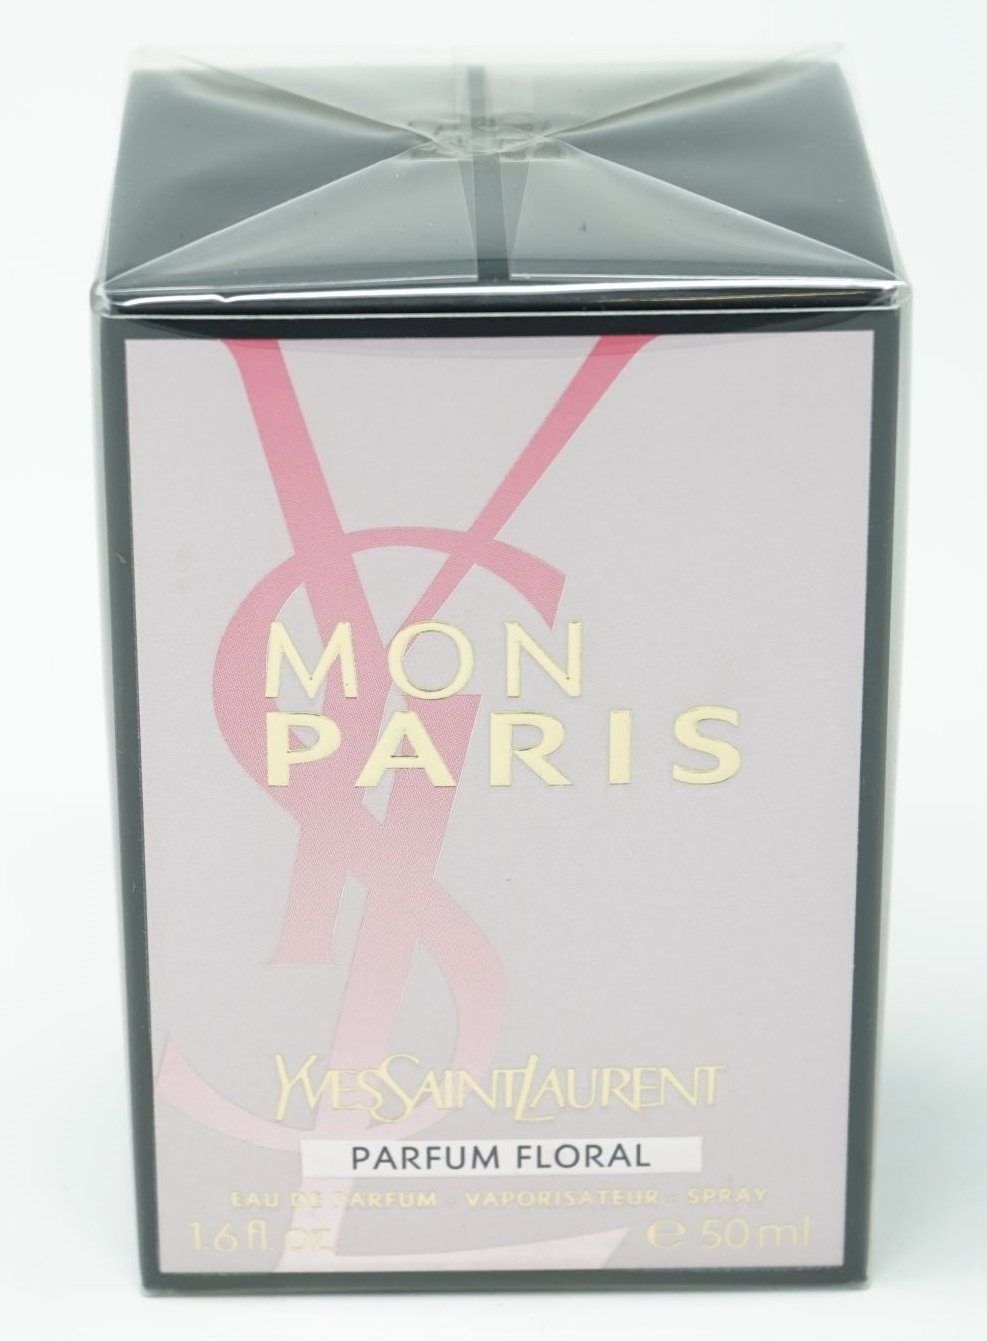 YVES SAINT LAURENT Eau de Parfum Yves Saint Laurent Mon Paris Parfum Floral Eau de Parfum Spray 50 ml